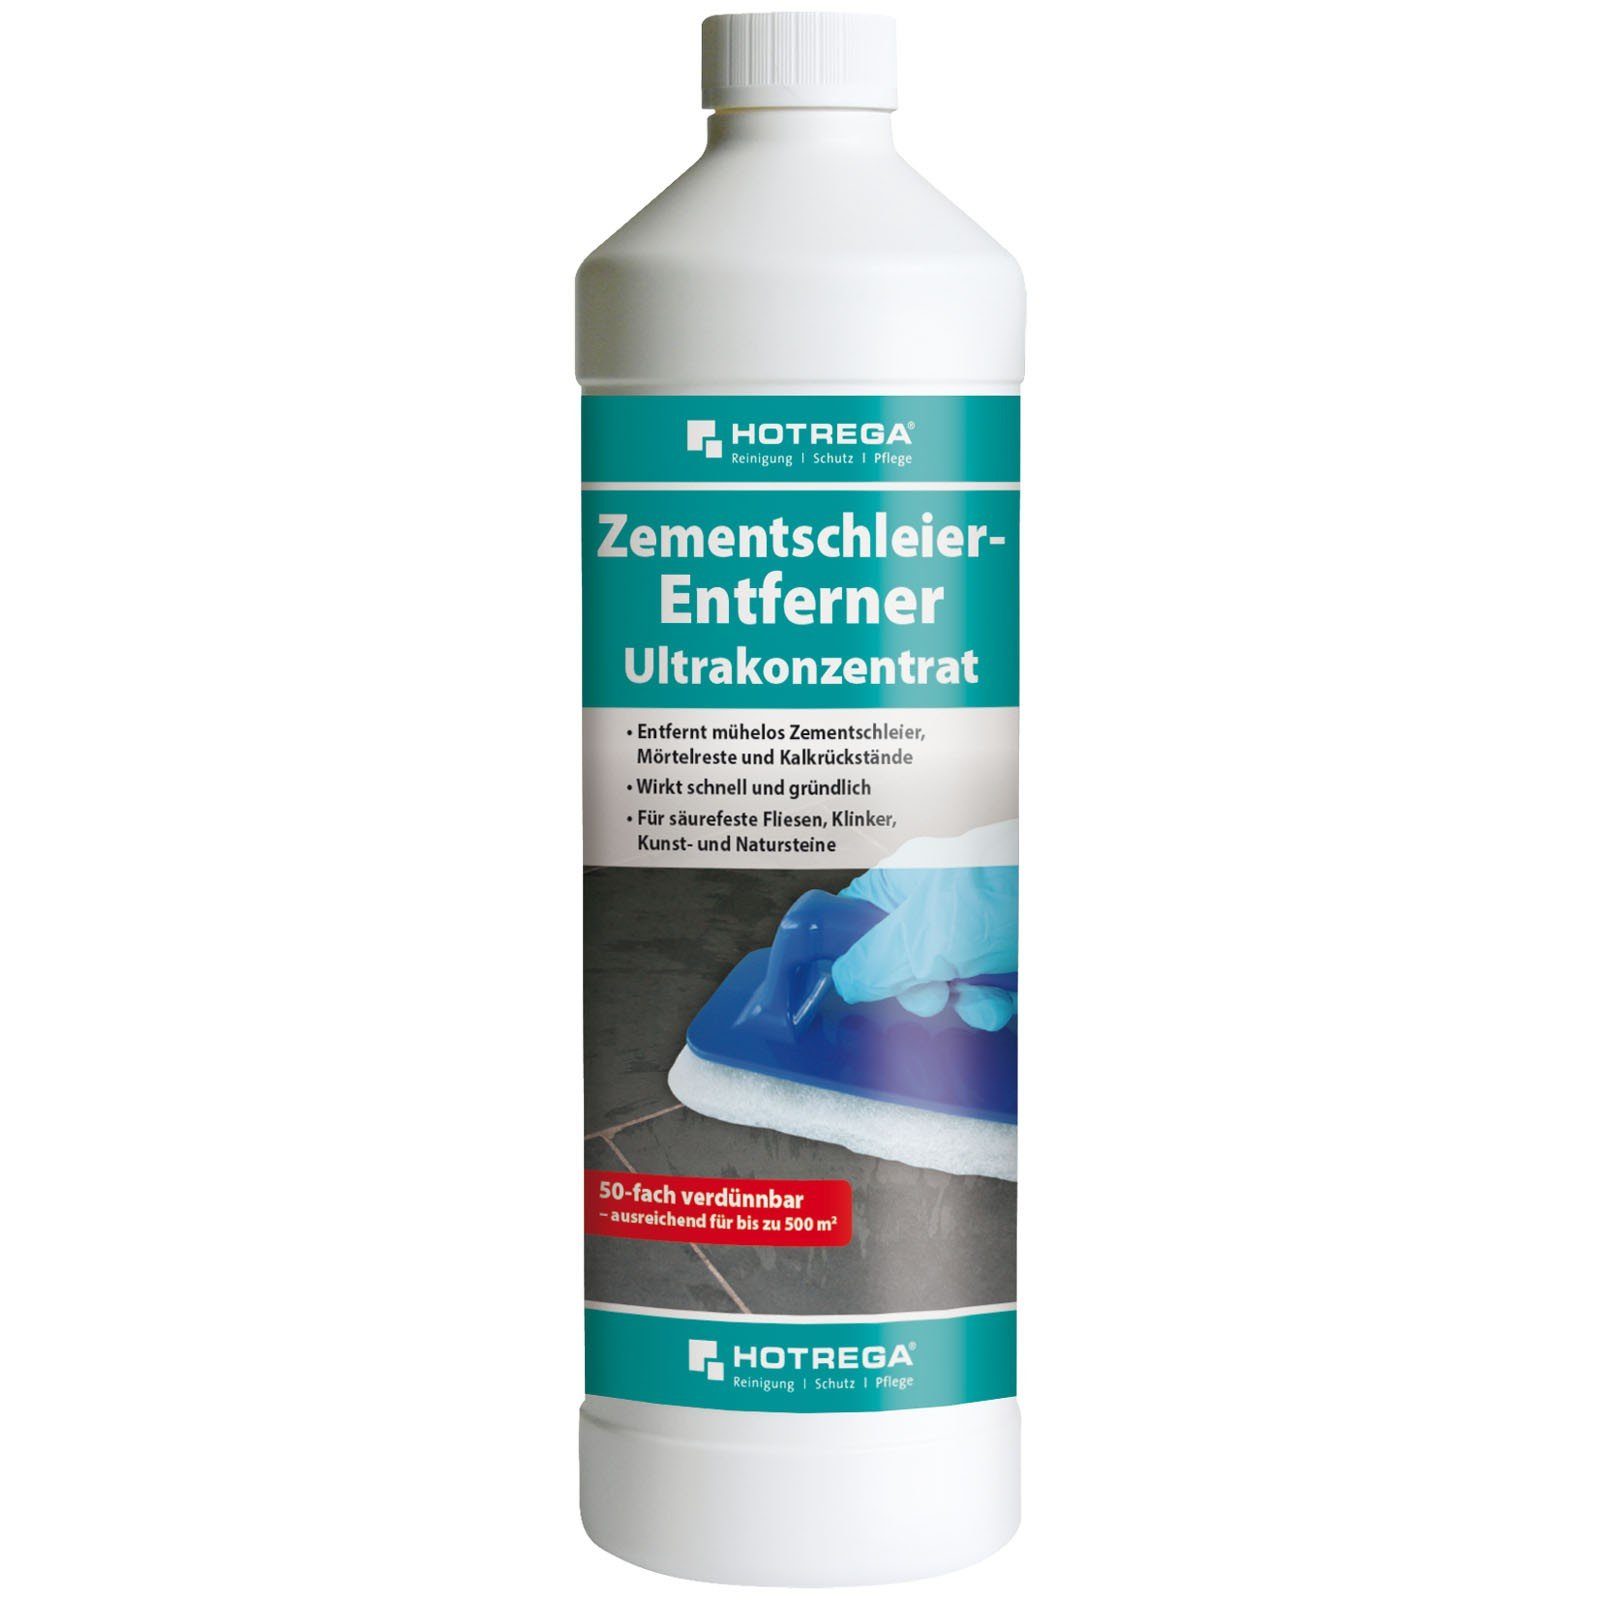 HOTREGA® Zementschleier Entferner Ultrakonzentrat Reinigungskonzentrat Liter 1